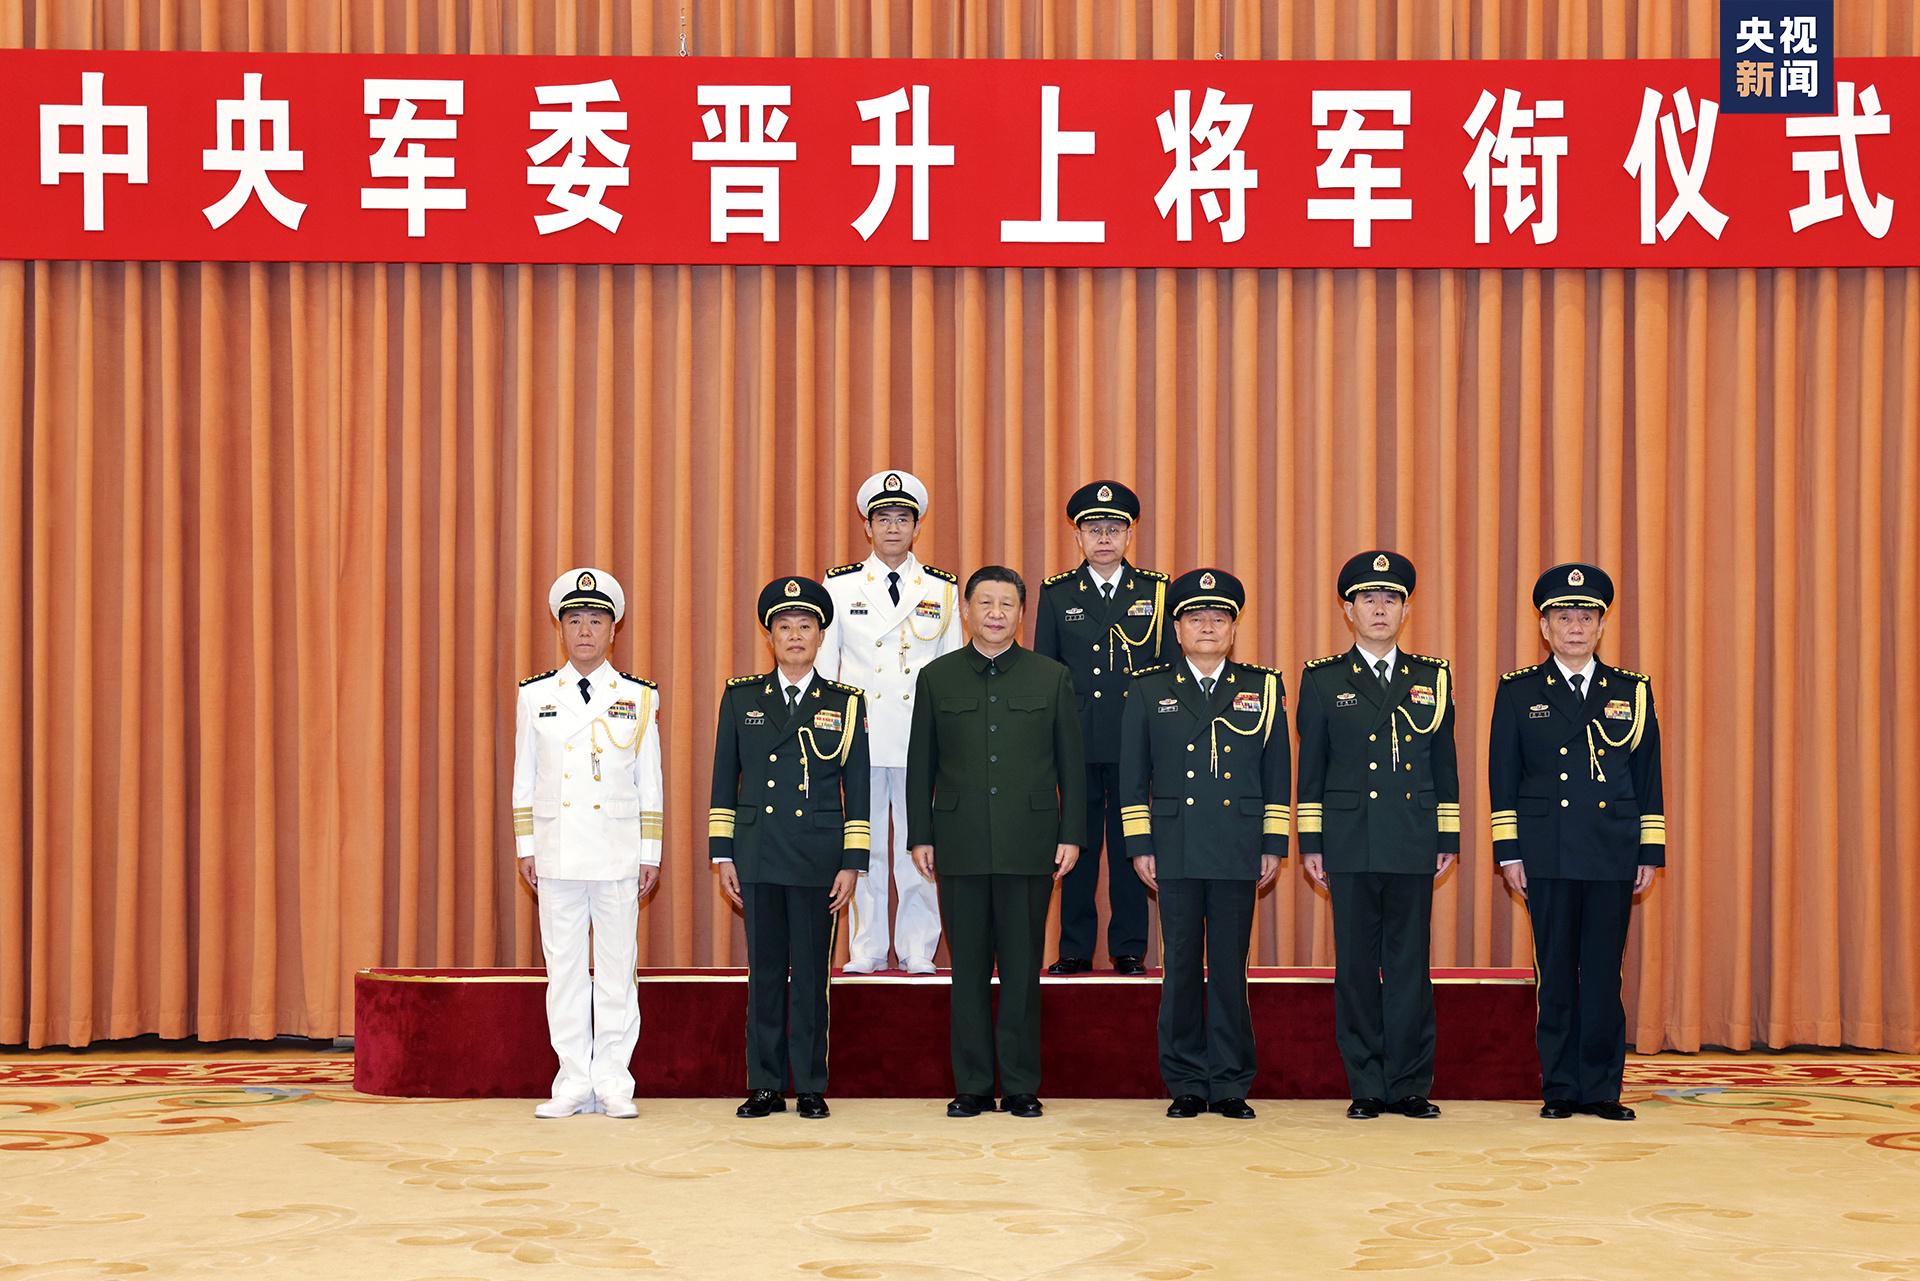 中央军委举行晋升上将军衔仪式 晋升上将军衔仪式2016